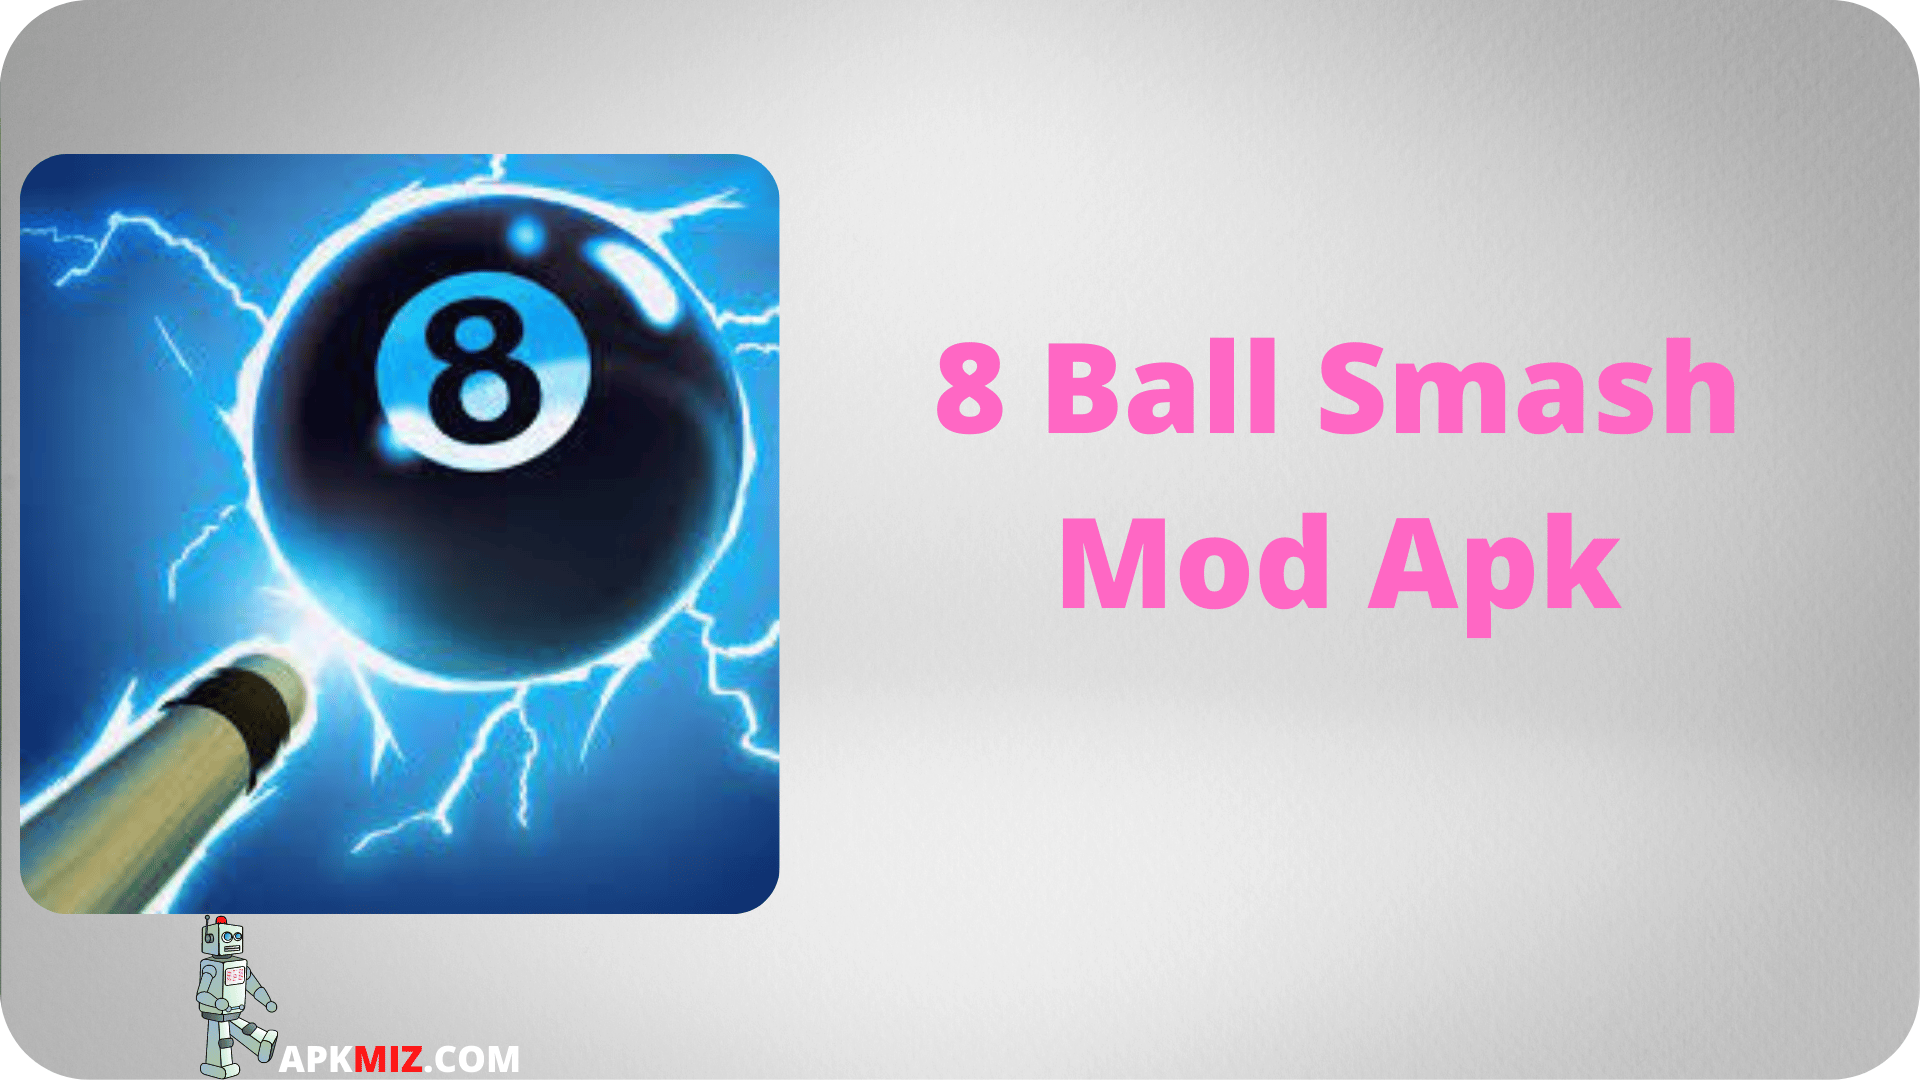 8 Ball Smash Mod Apk